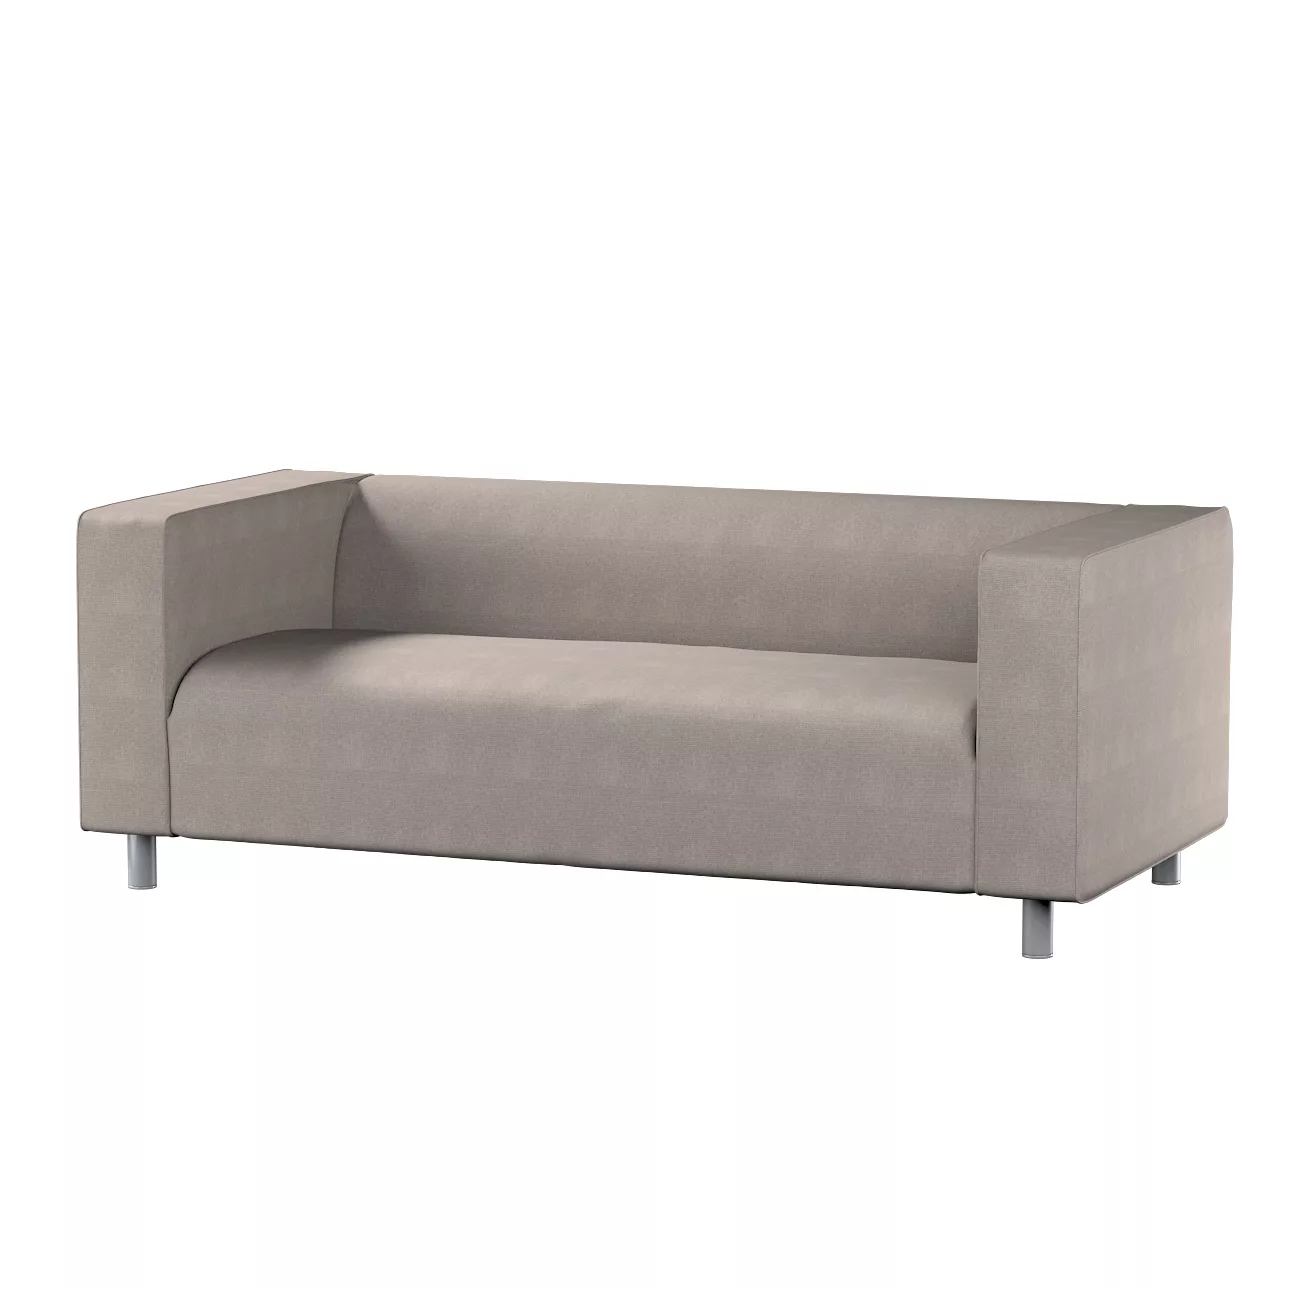 Bezug für Klippan 2-Sitzer Sofa, beige-grau, Sofahusse, Klippan 2-Sitzer, E günstig online kaufen